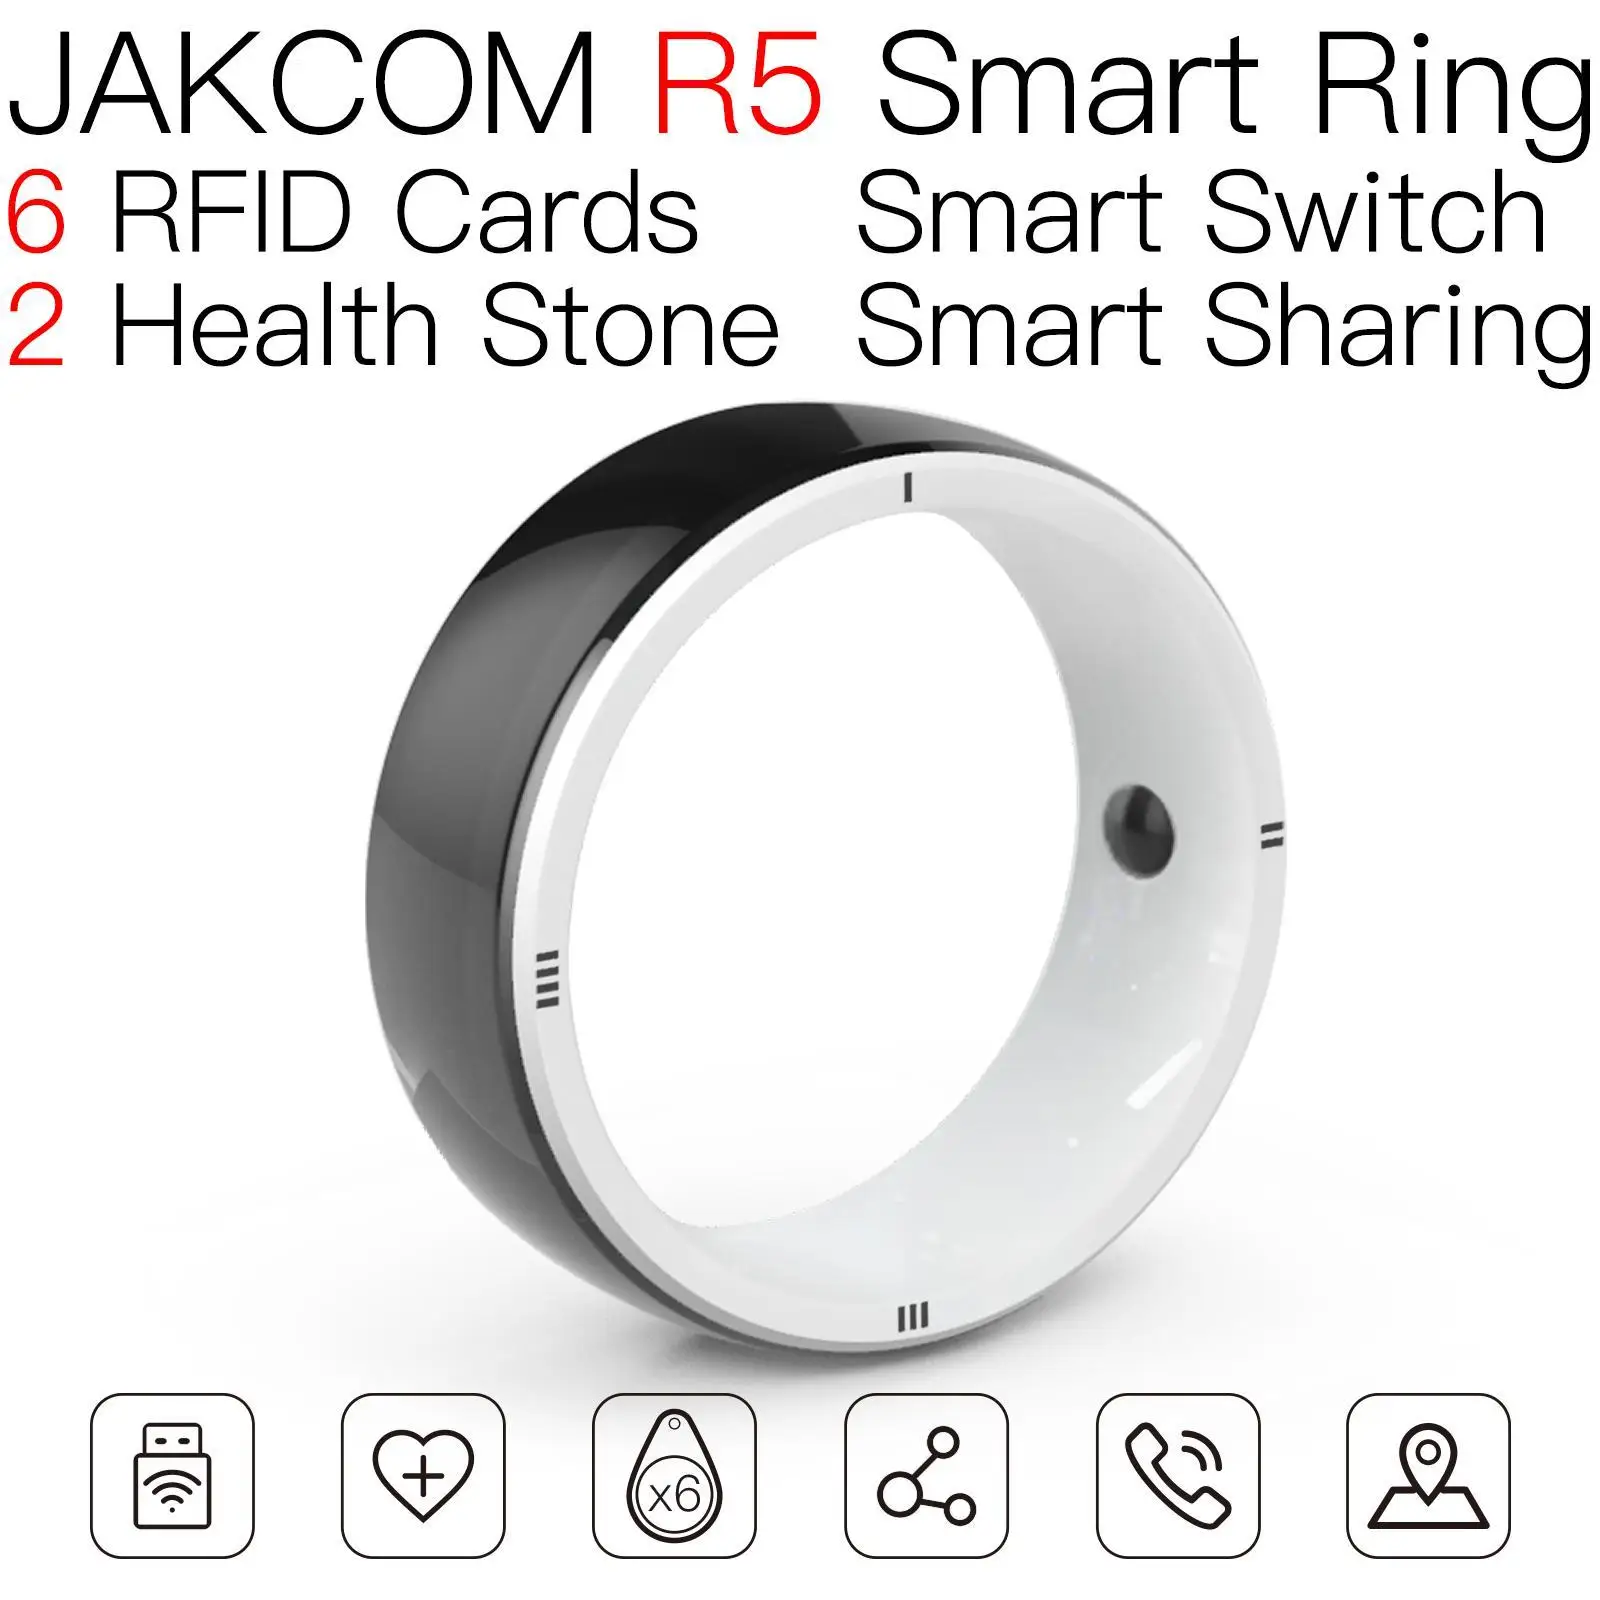 

JAKCOM R5 Smart Ring Nice than 1 4k premium ladies watches zigbee led true wireless earphones 3 smart gadgets